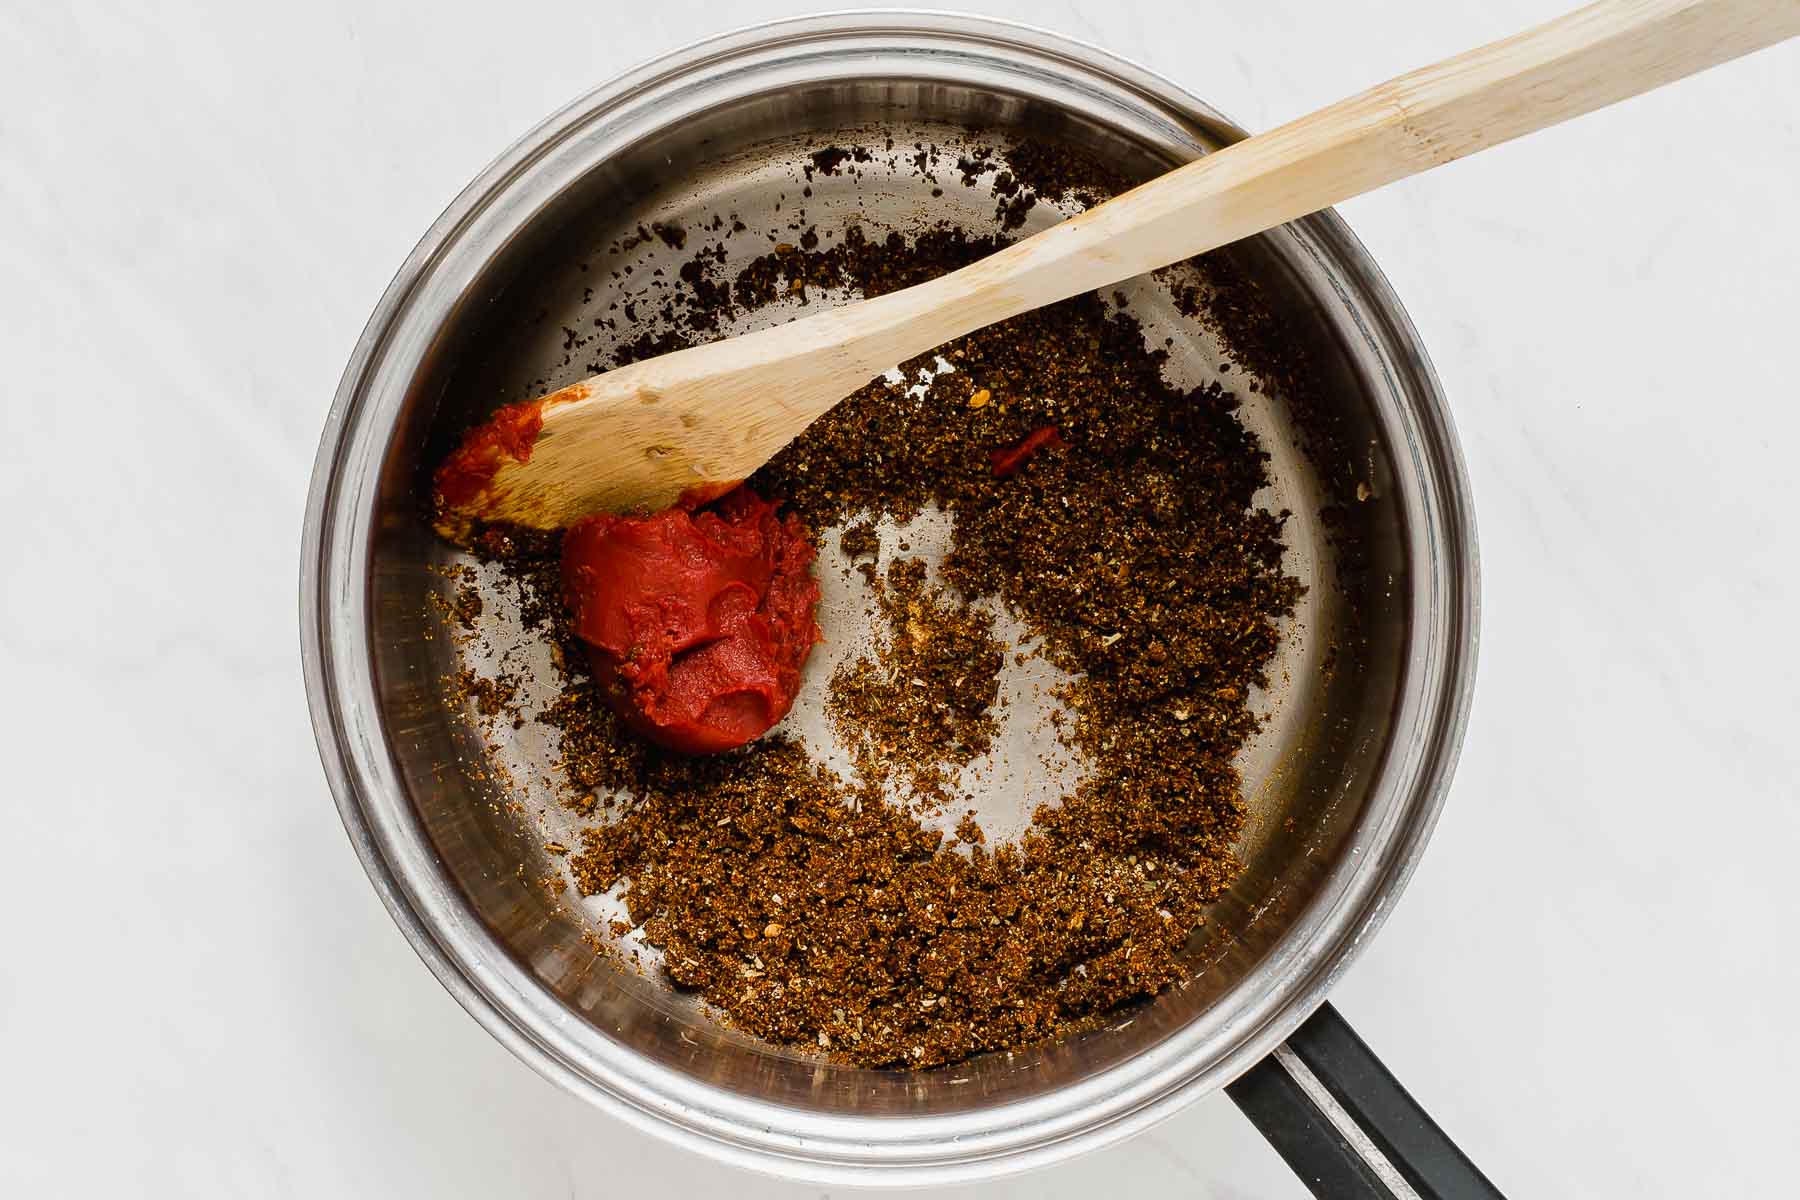 Adding tomato paste to spices sautéing in oil.